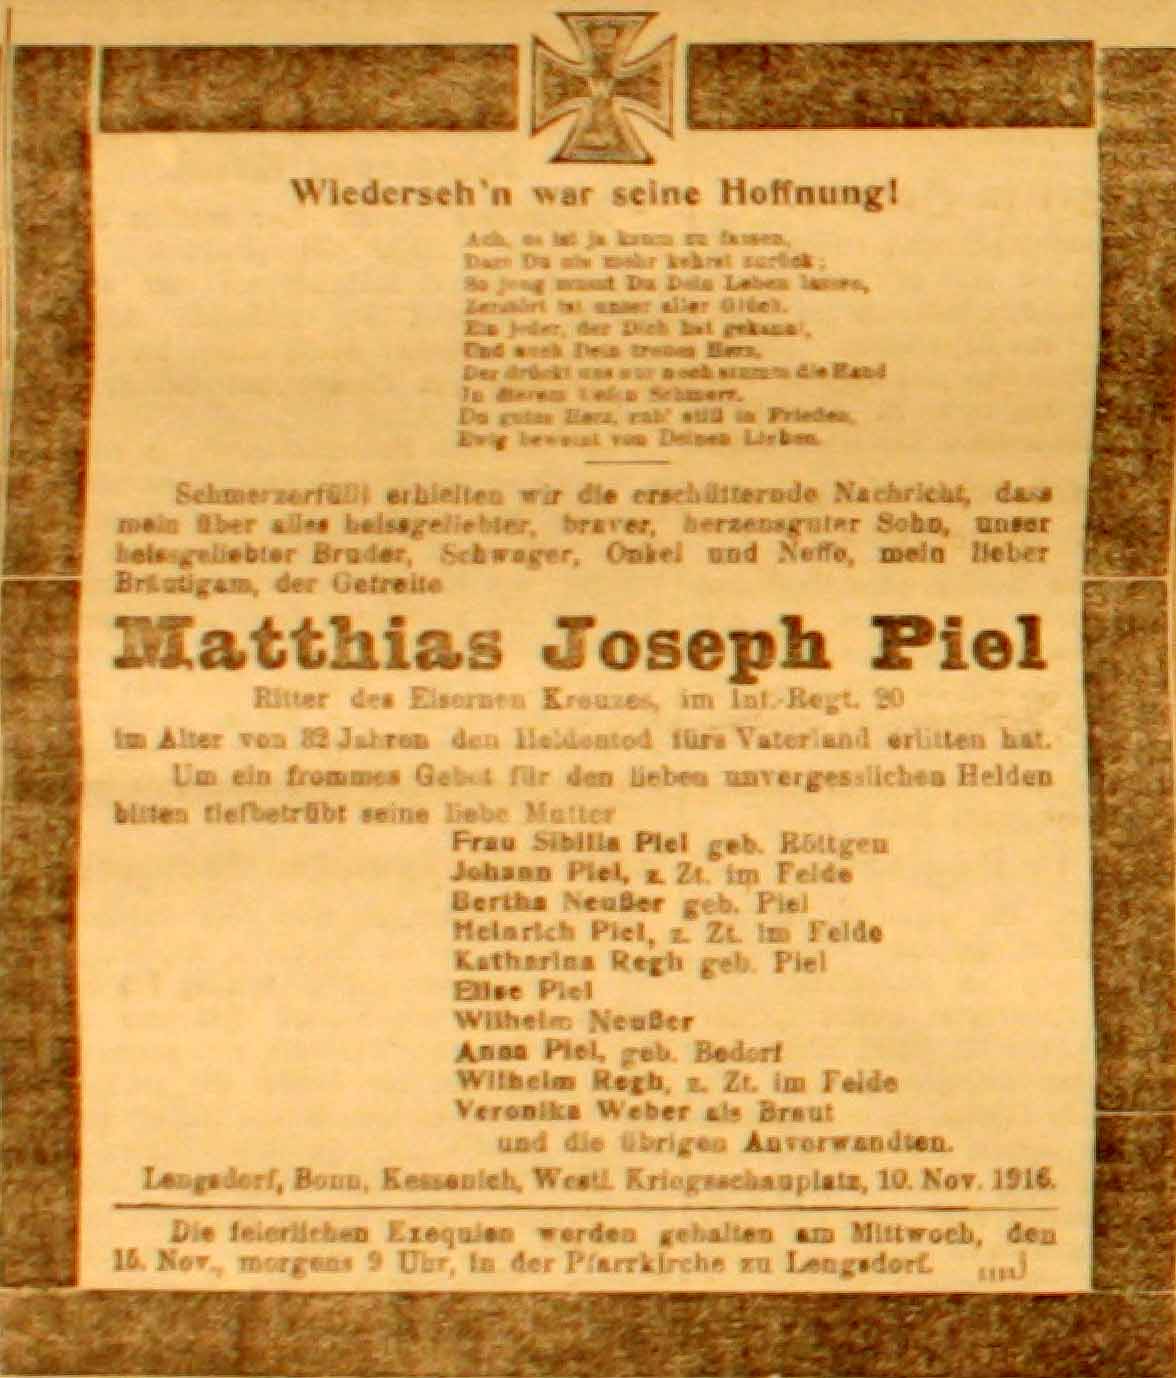 Anzeige in der Deutschen Reichs-Zeitung vom 12. November 1916